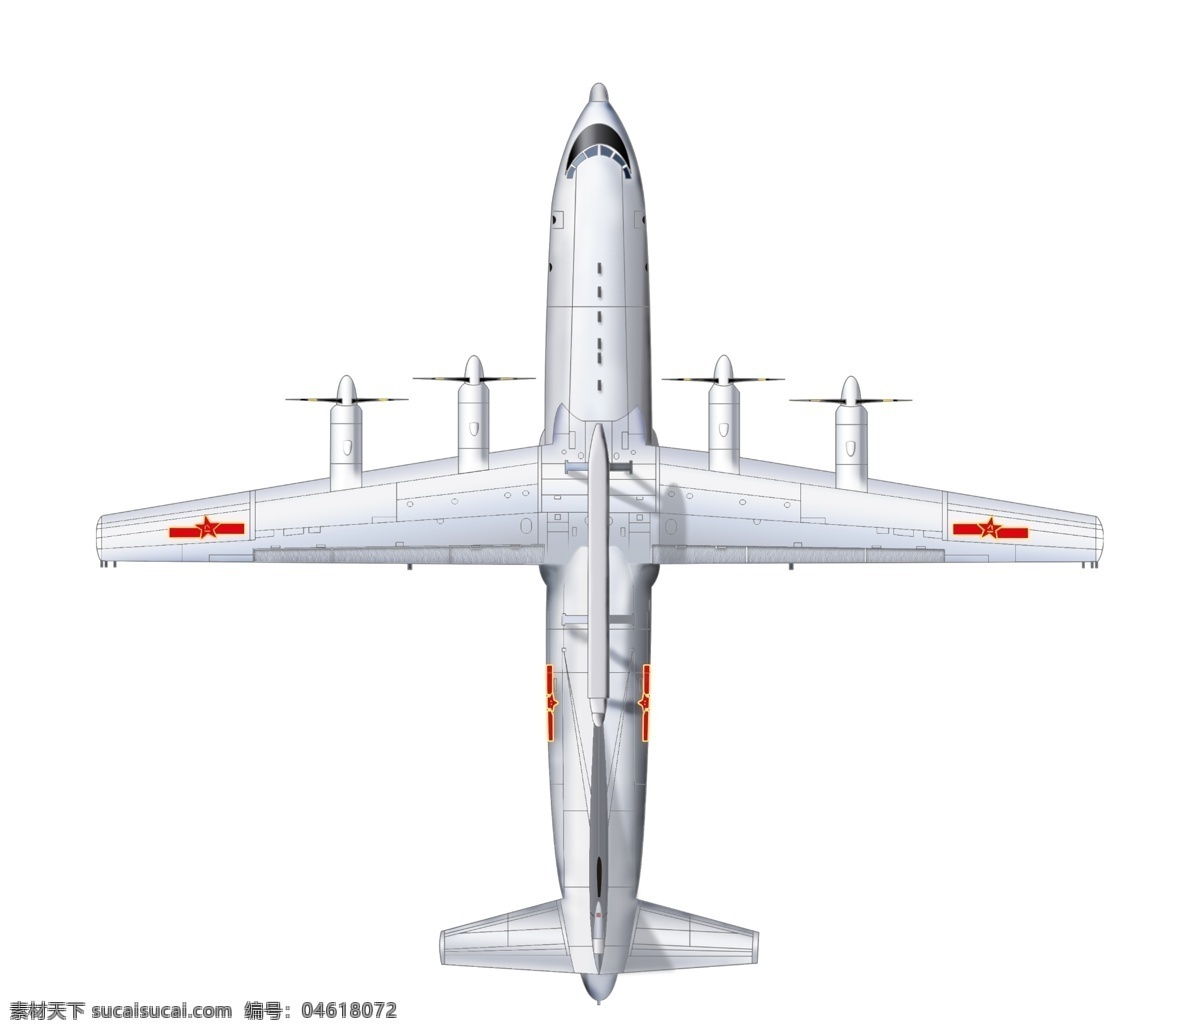 中国 新型 空中 预警机 飞机 战斗机 图层 产品设计 其他模型 3d设计模型 源文件